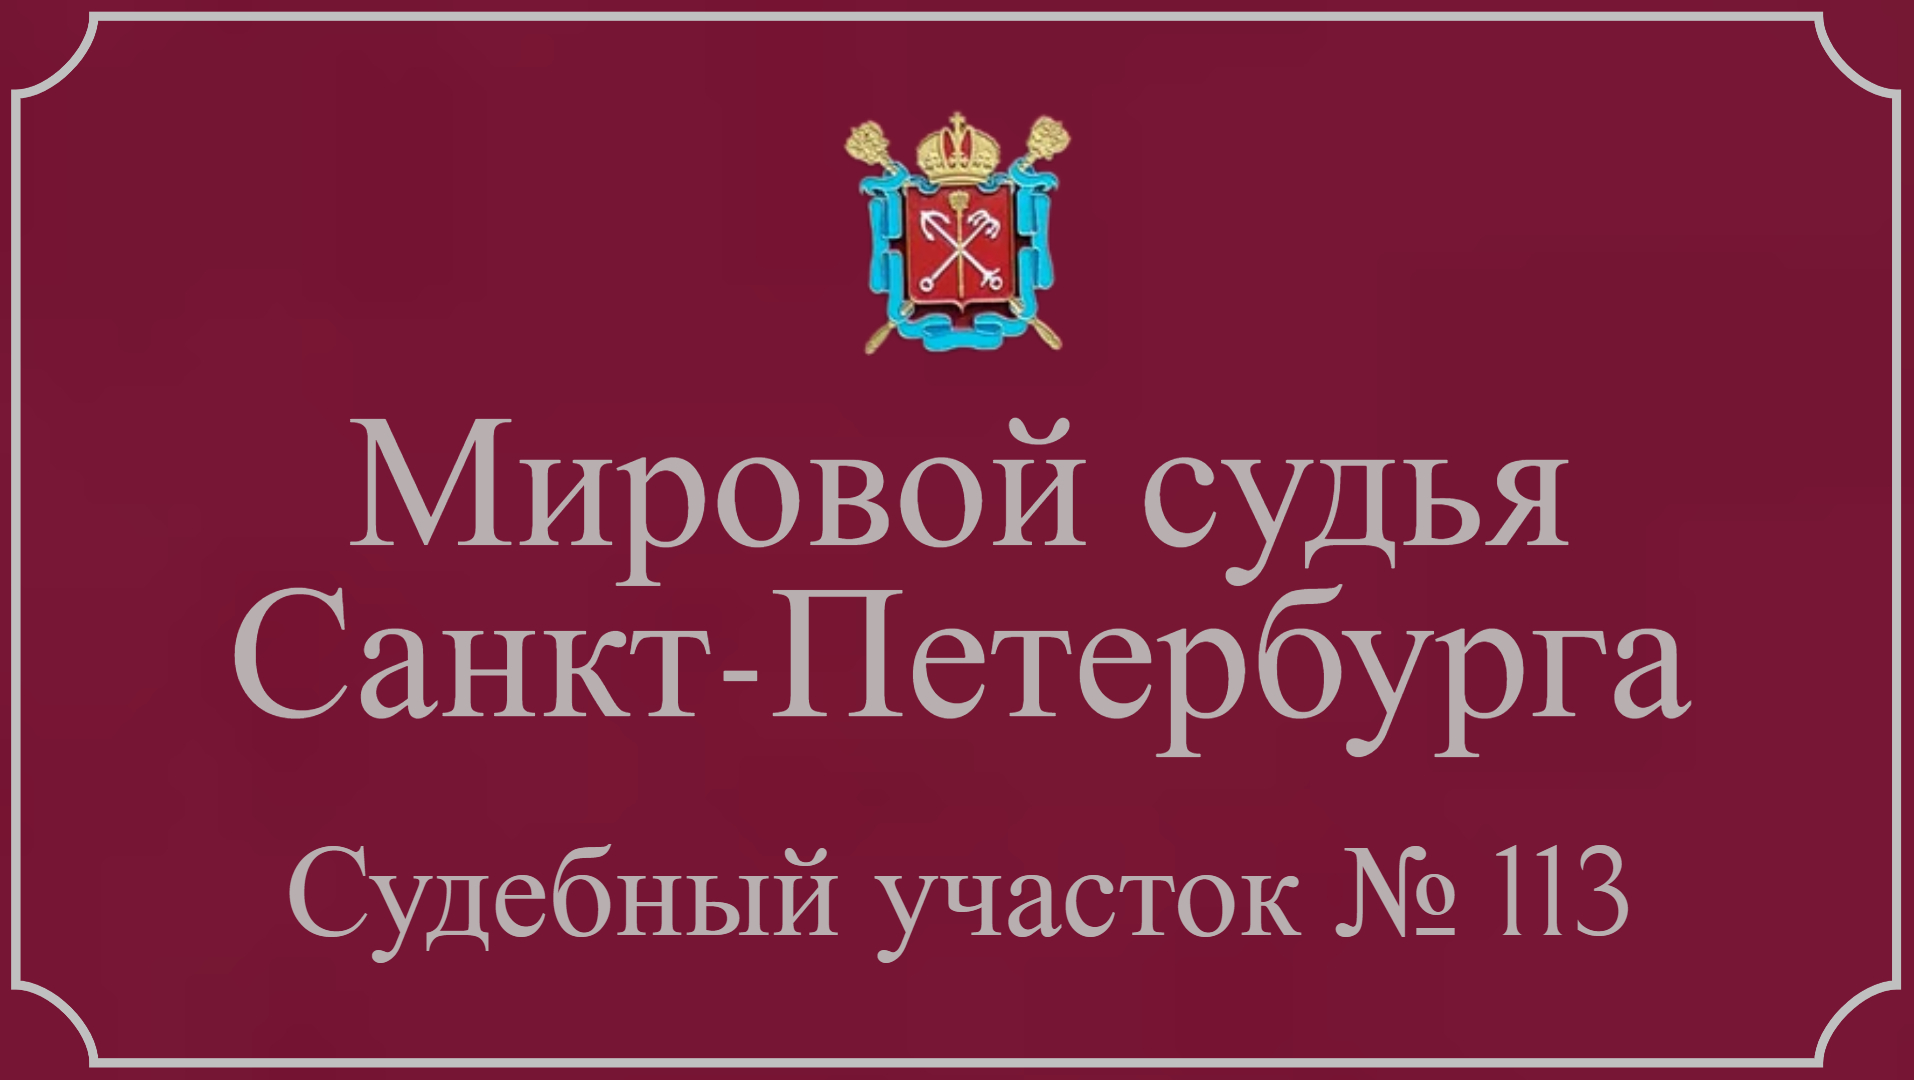 Информация по 113 судебному участку в Зеленогорске.